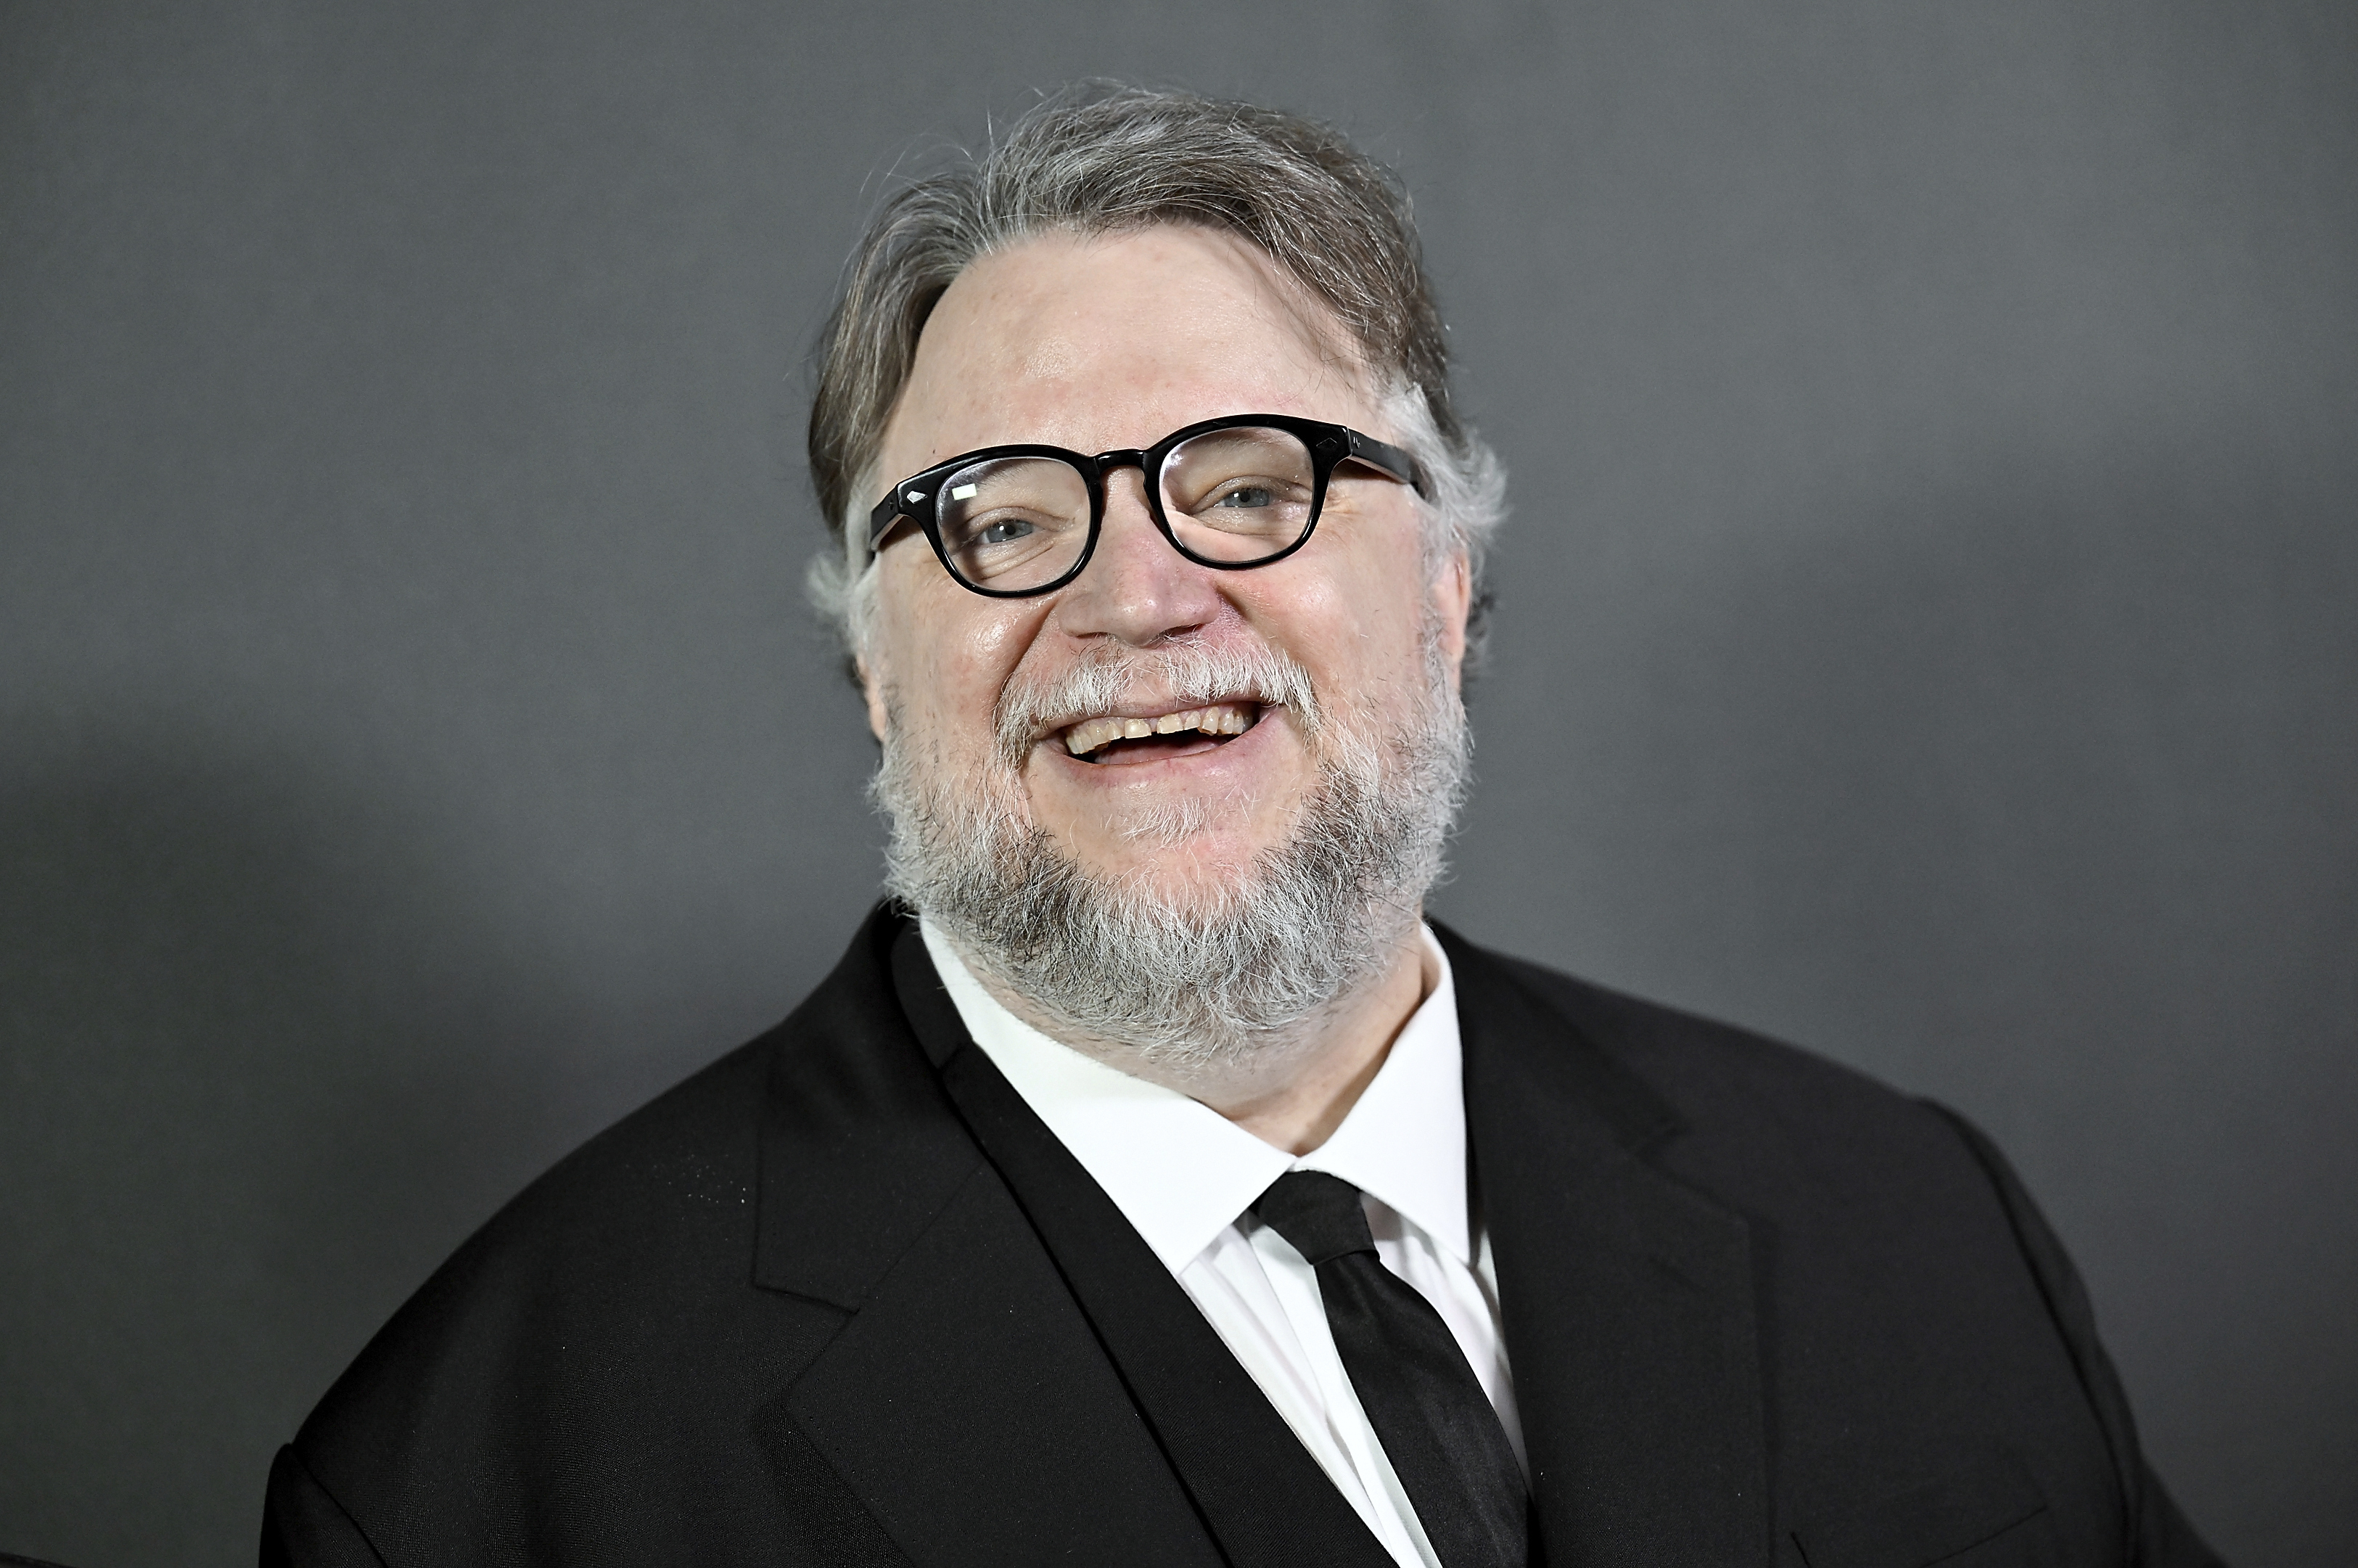 Guillermo del Toro es uno de los 500 líderes más influyentes del mundo audiovisual según la revista Variety (Foto Evan Agostini/Invision/AP)